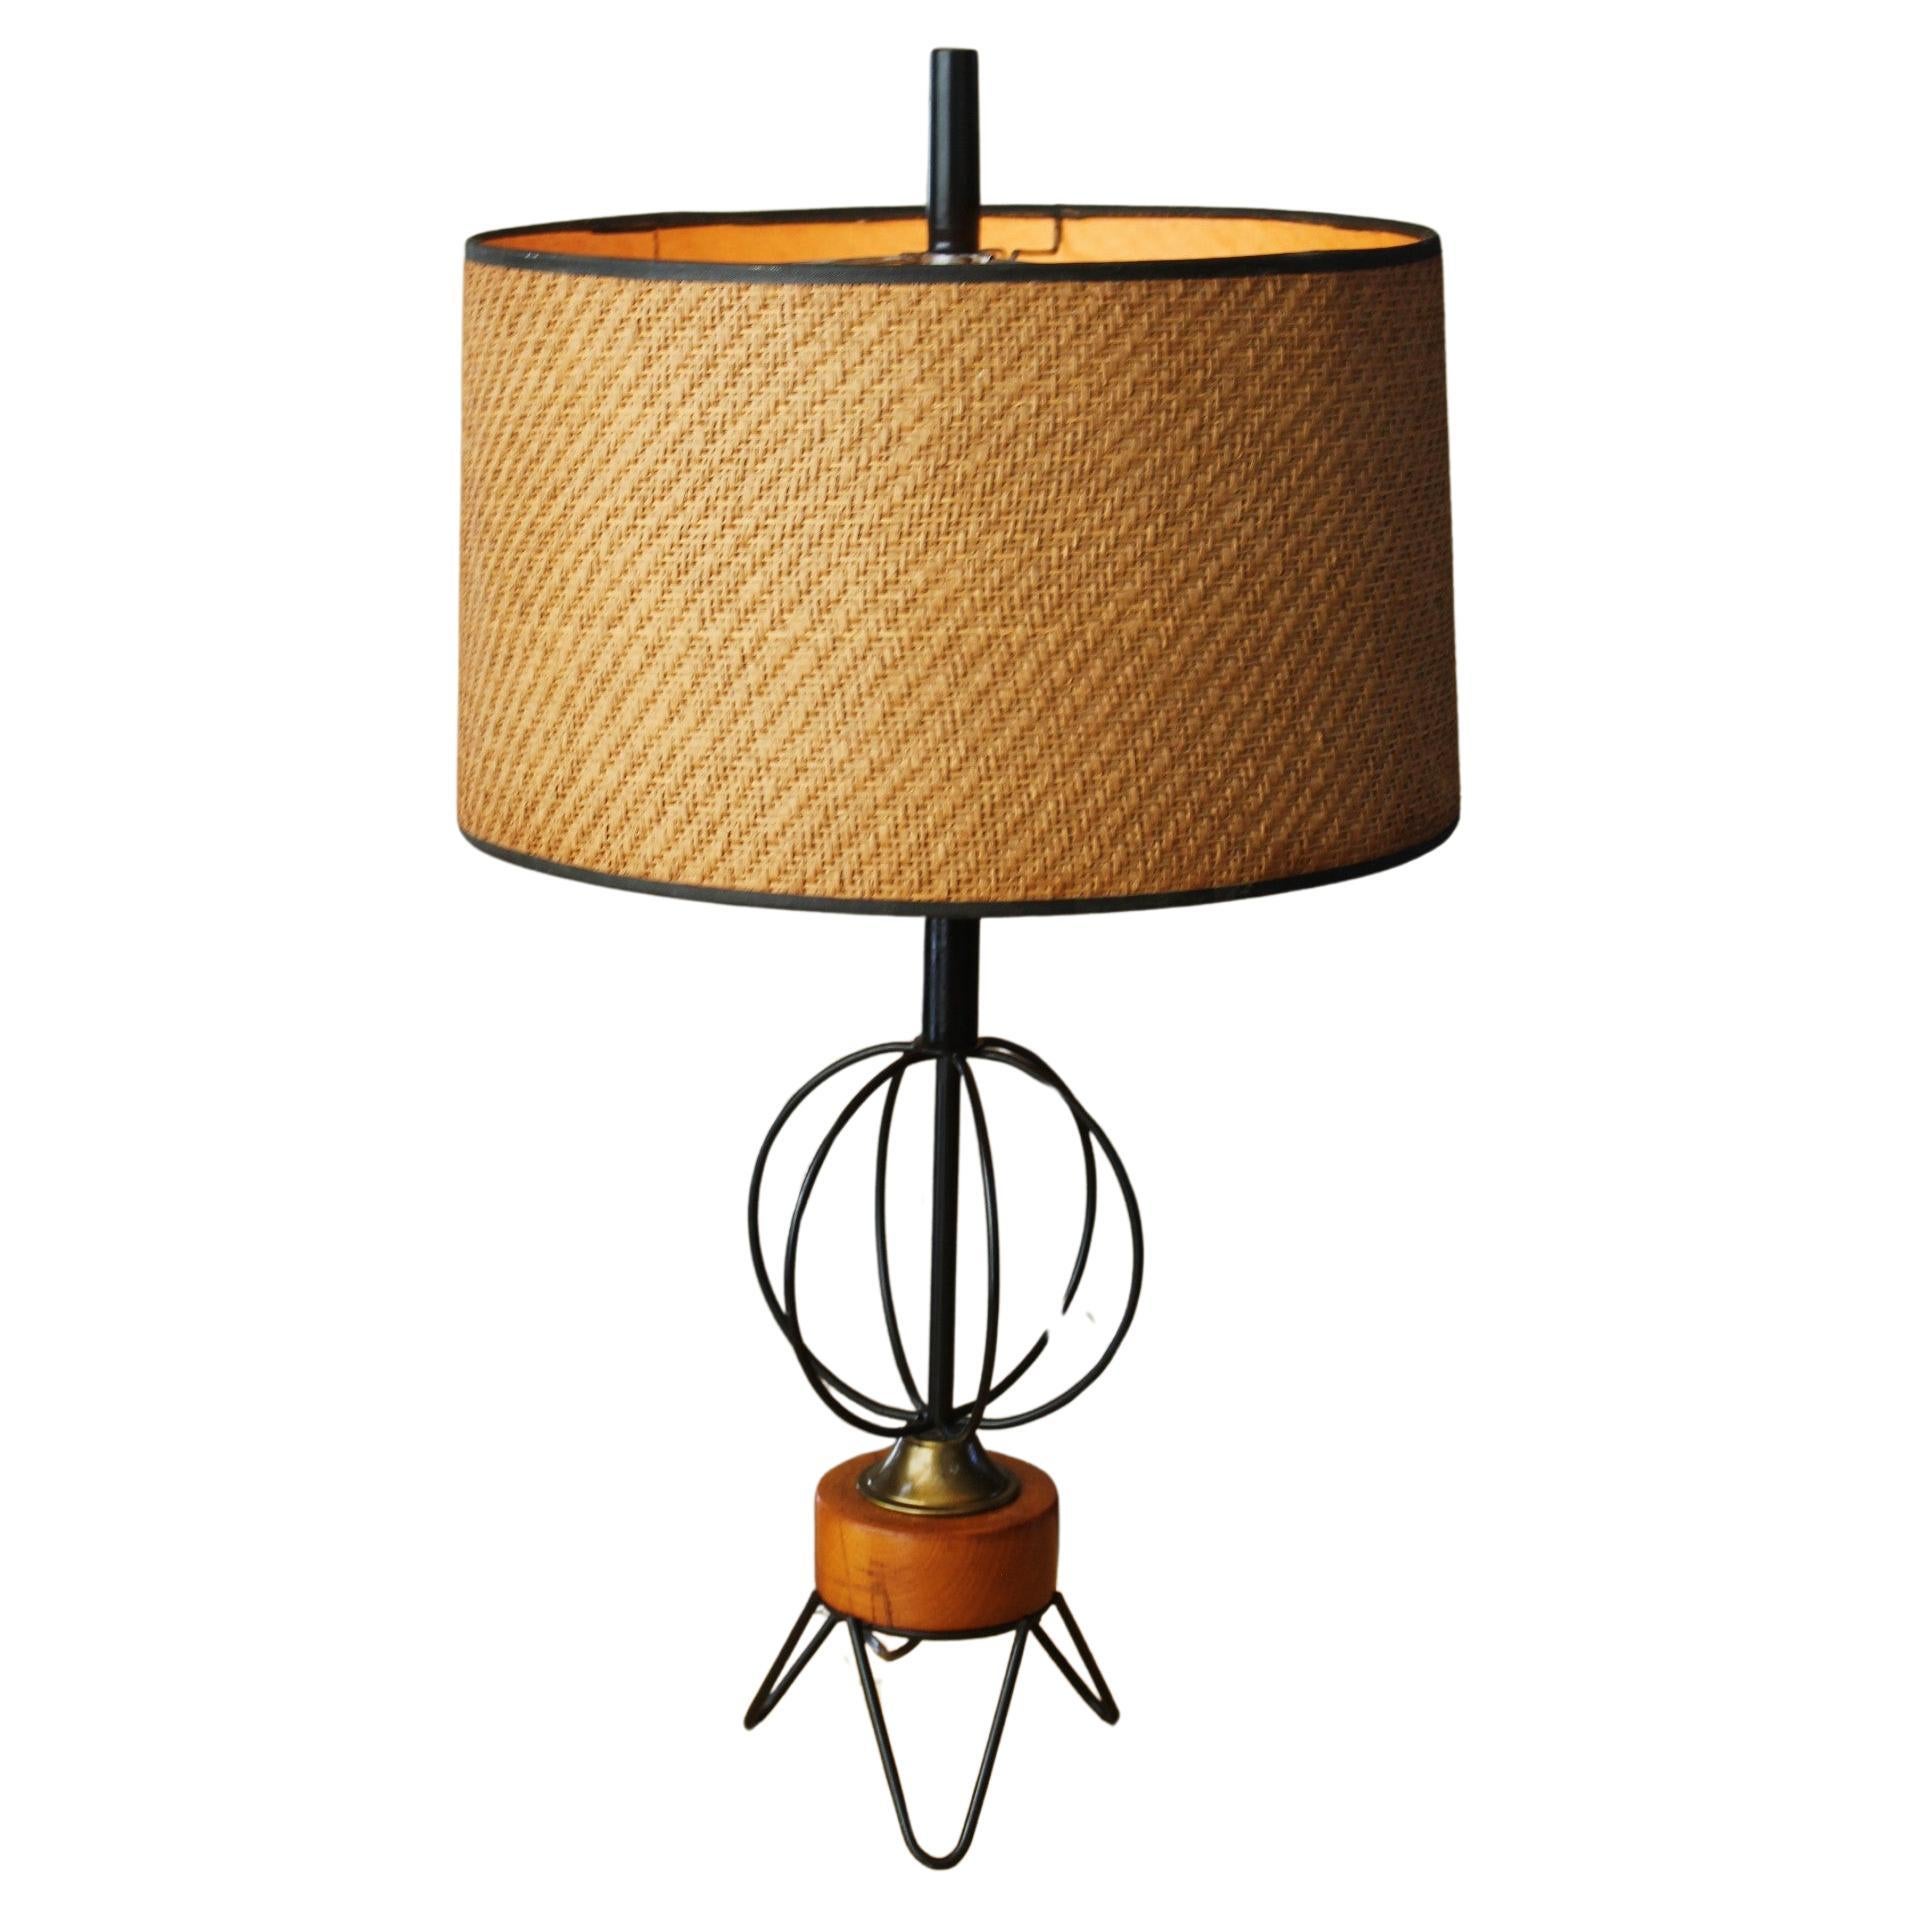 Yasha Heifetz Table Lamps